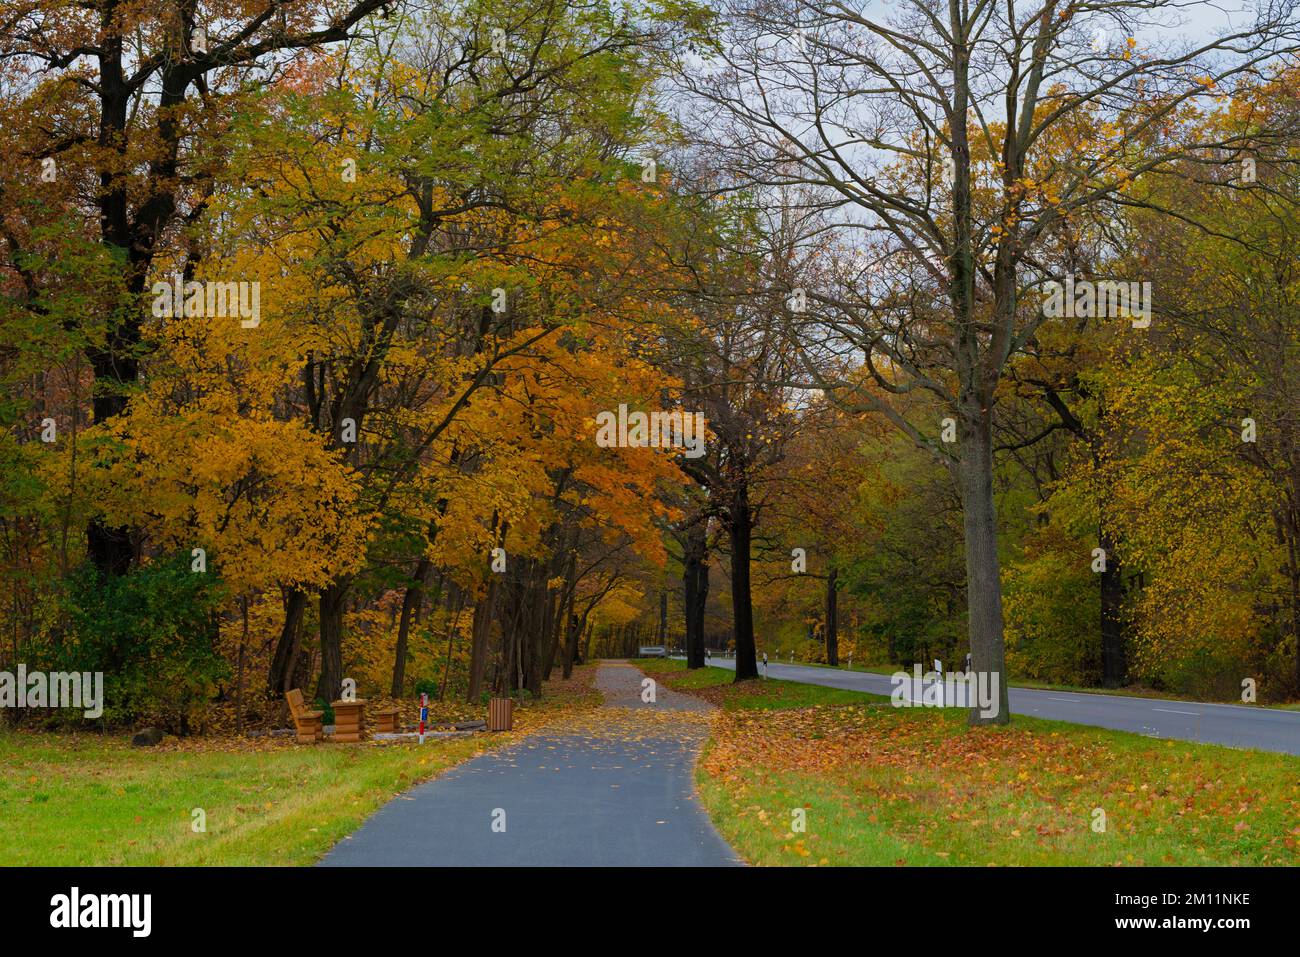 Carretera rural y carril bici en otoño, zona de descanso con muebles de  madera a lo largo del camino, árboles con hojas descoloridas Fotografía de  stock - Alamy